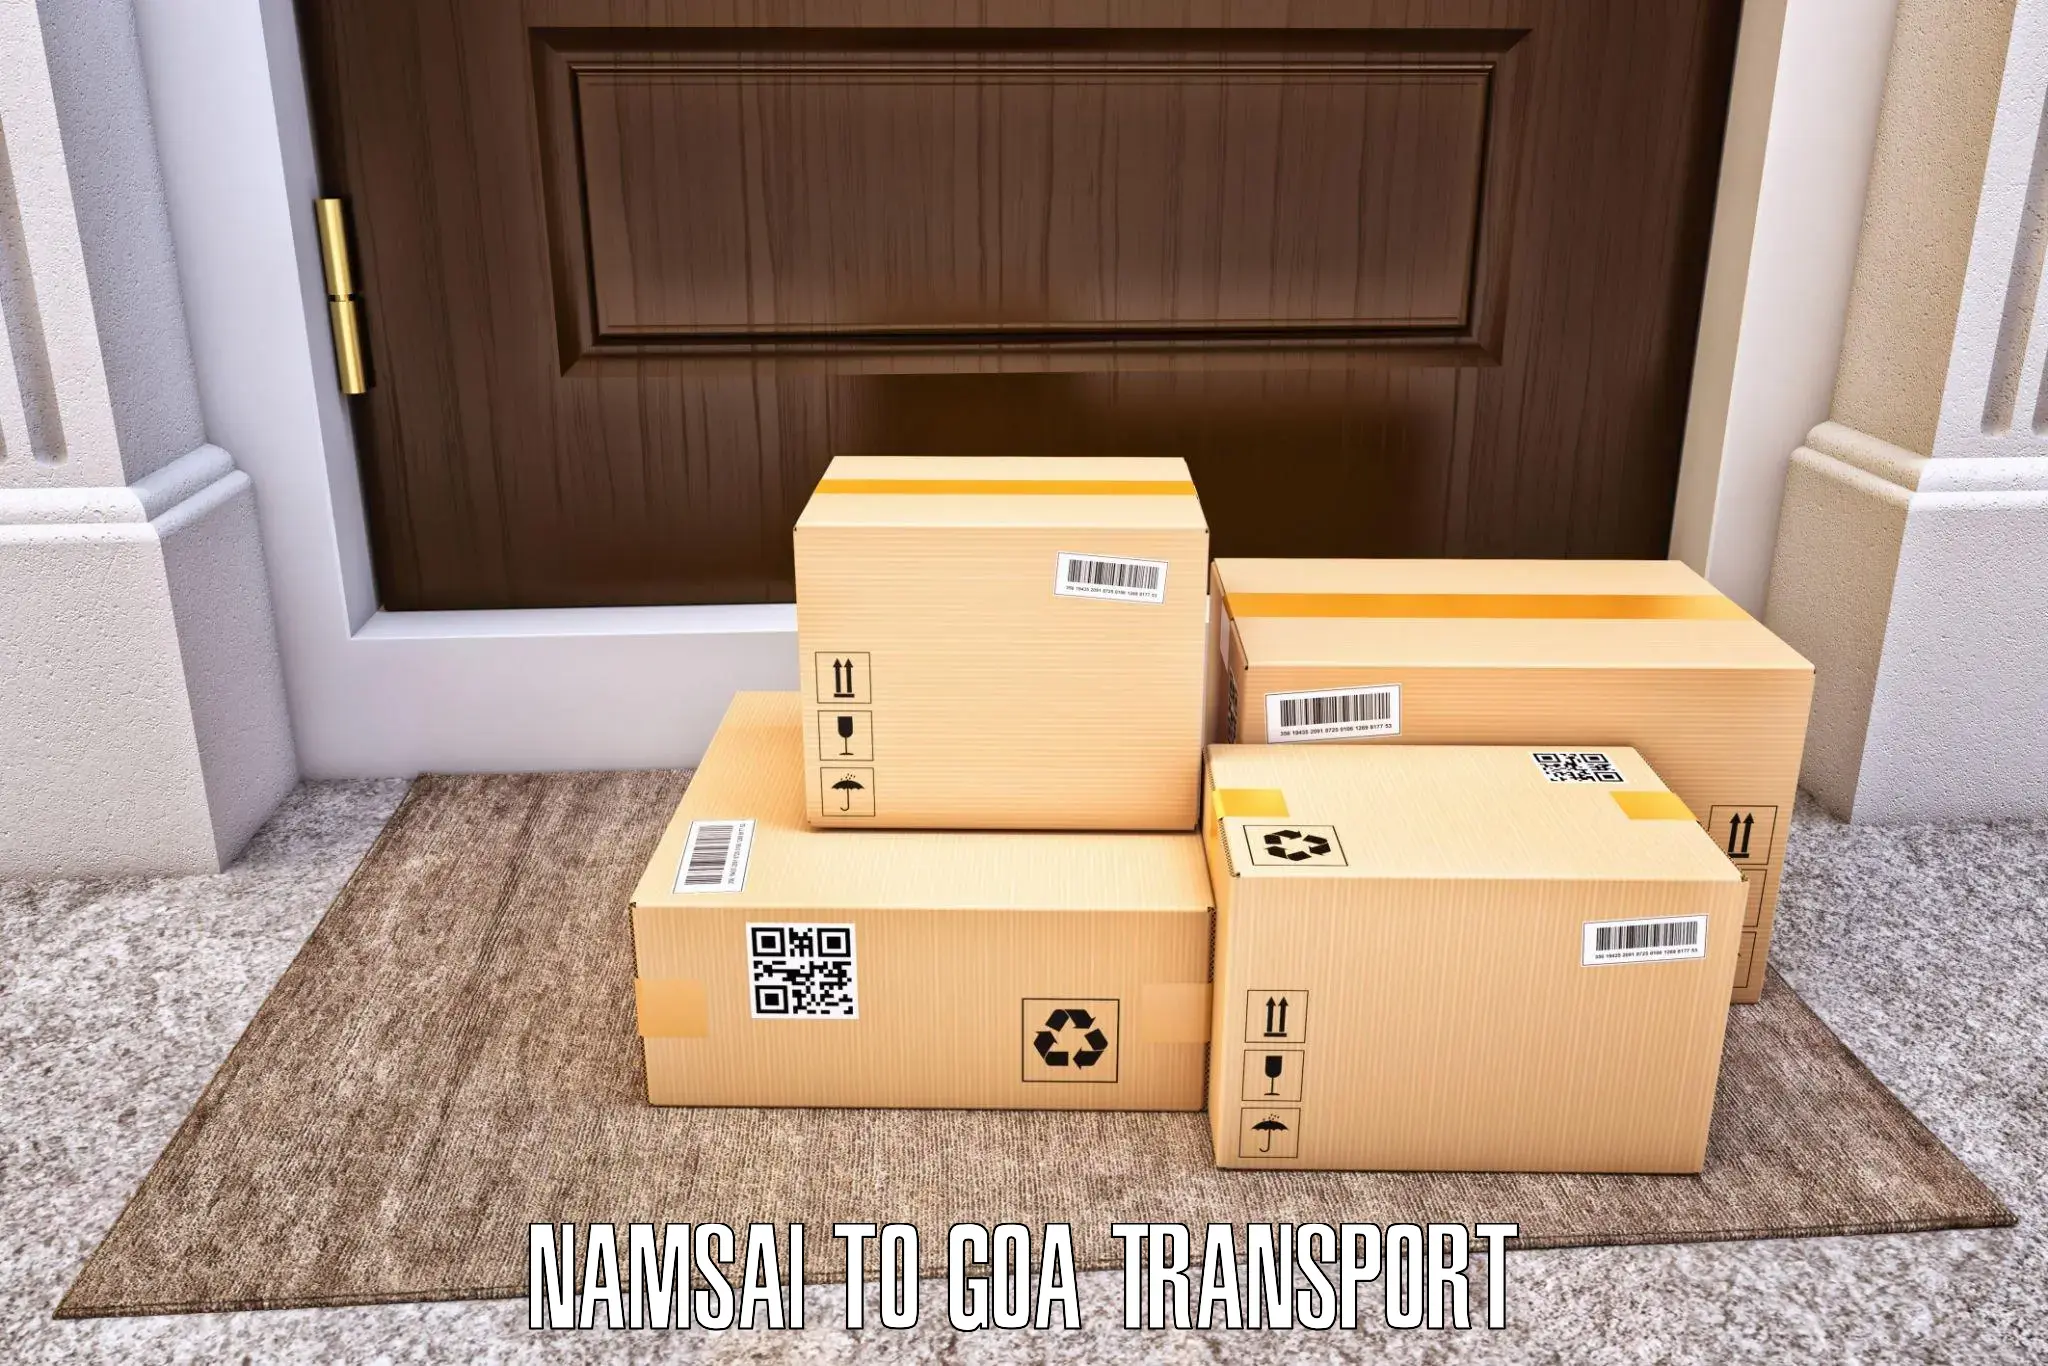 Daily transport service Namsai to Mormugao Port